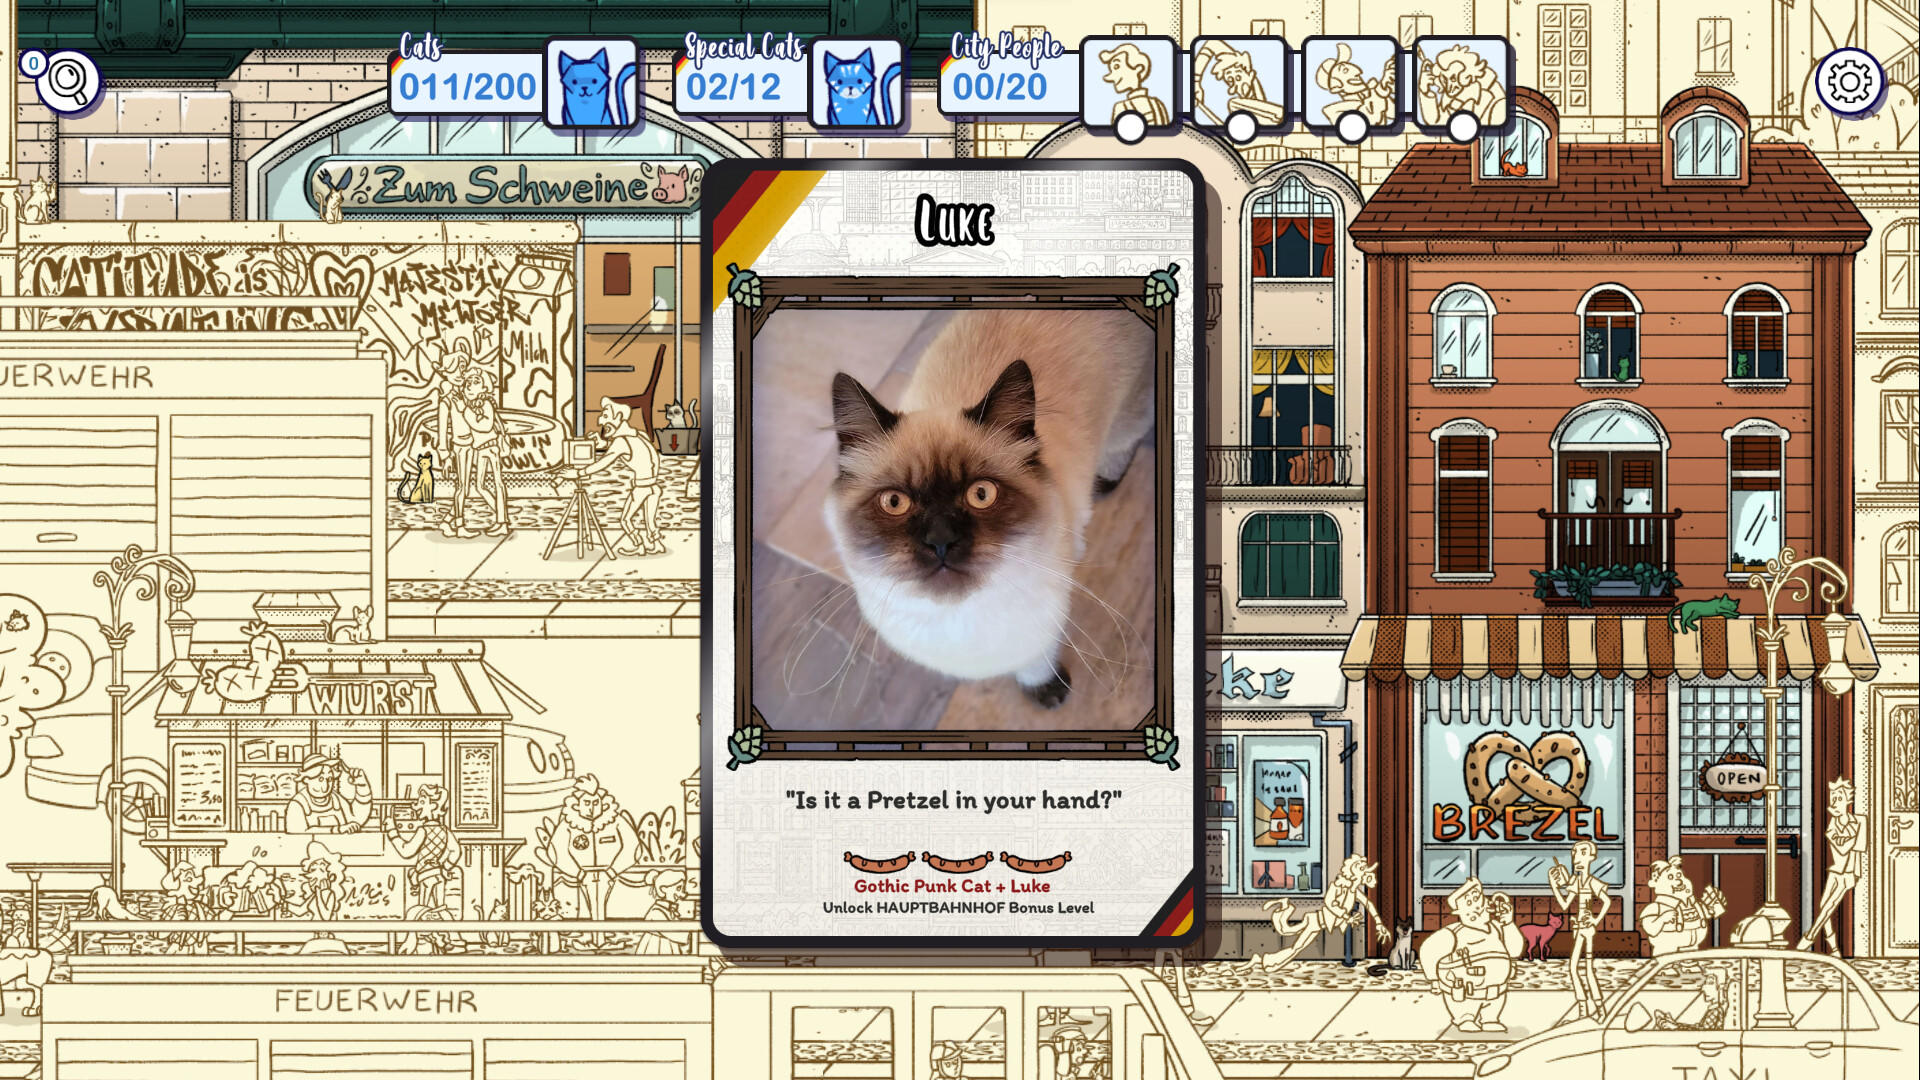 Hidden Cats in Berlin screenshot game